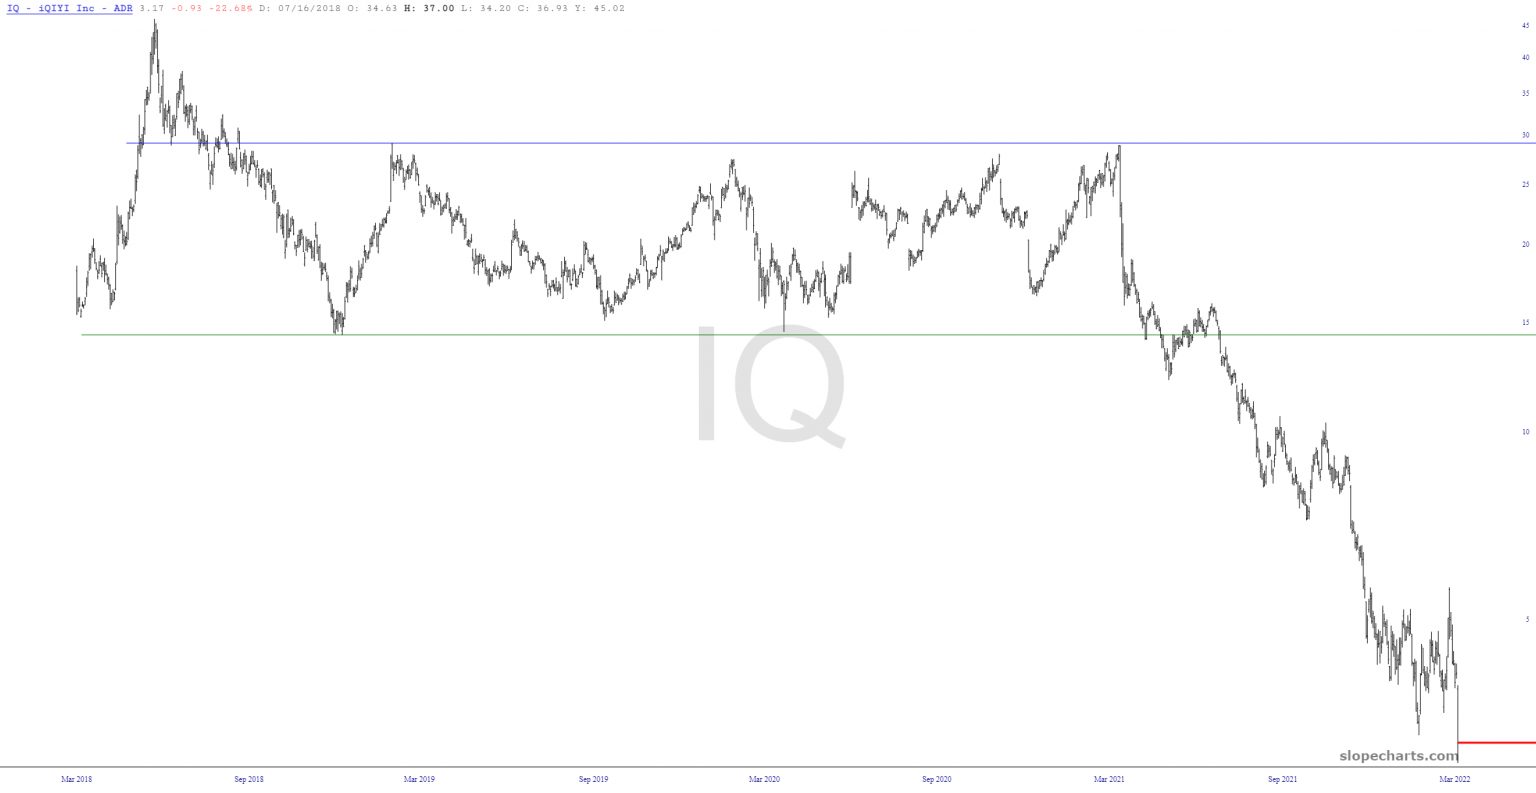 Long-Term IQ Chart.